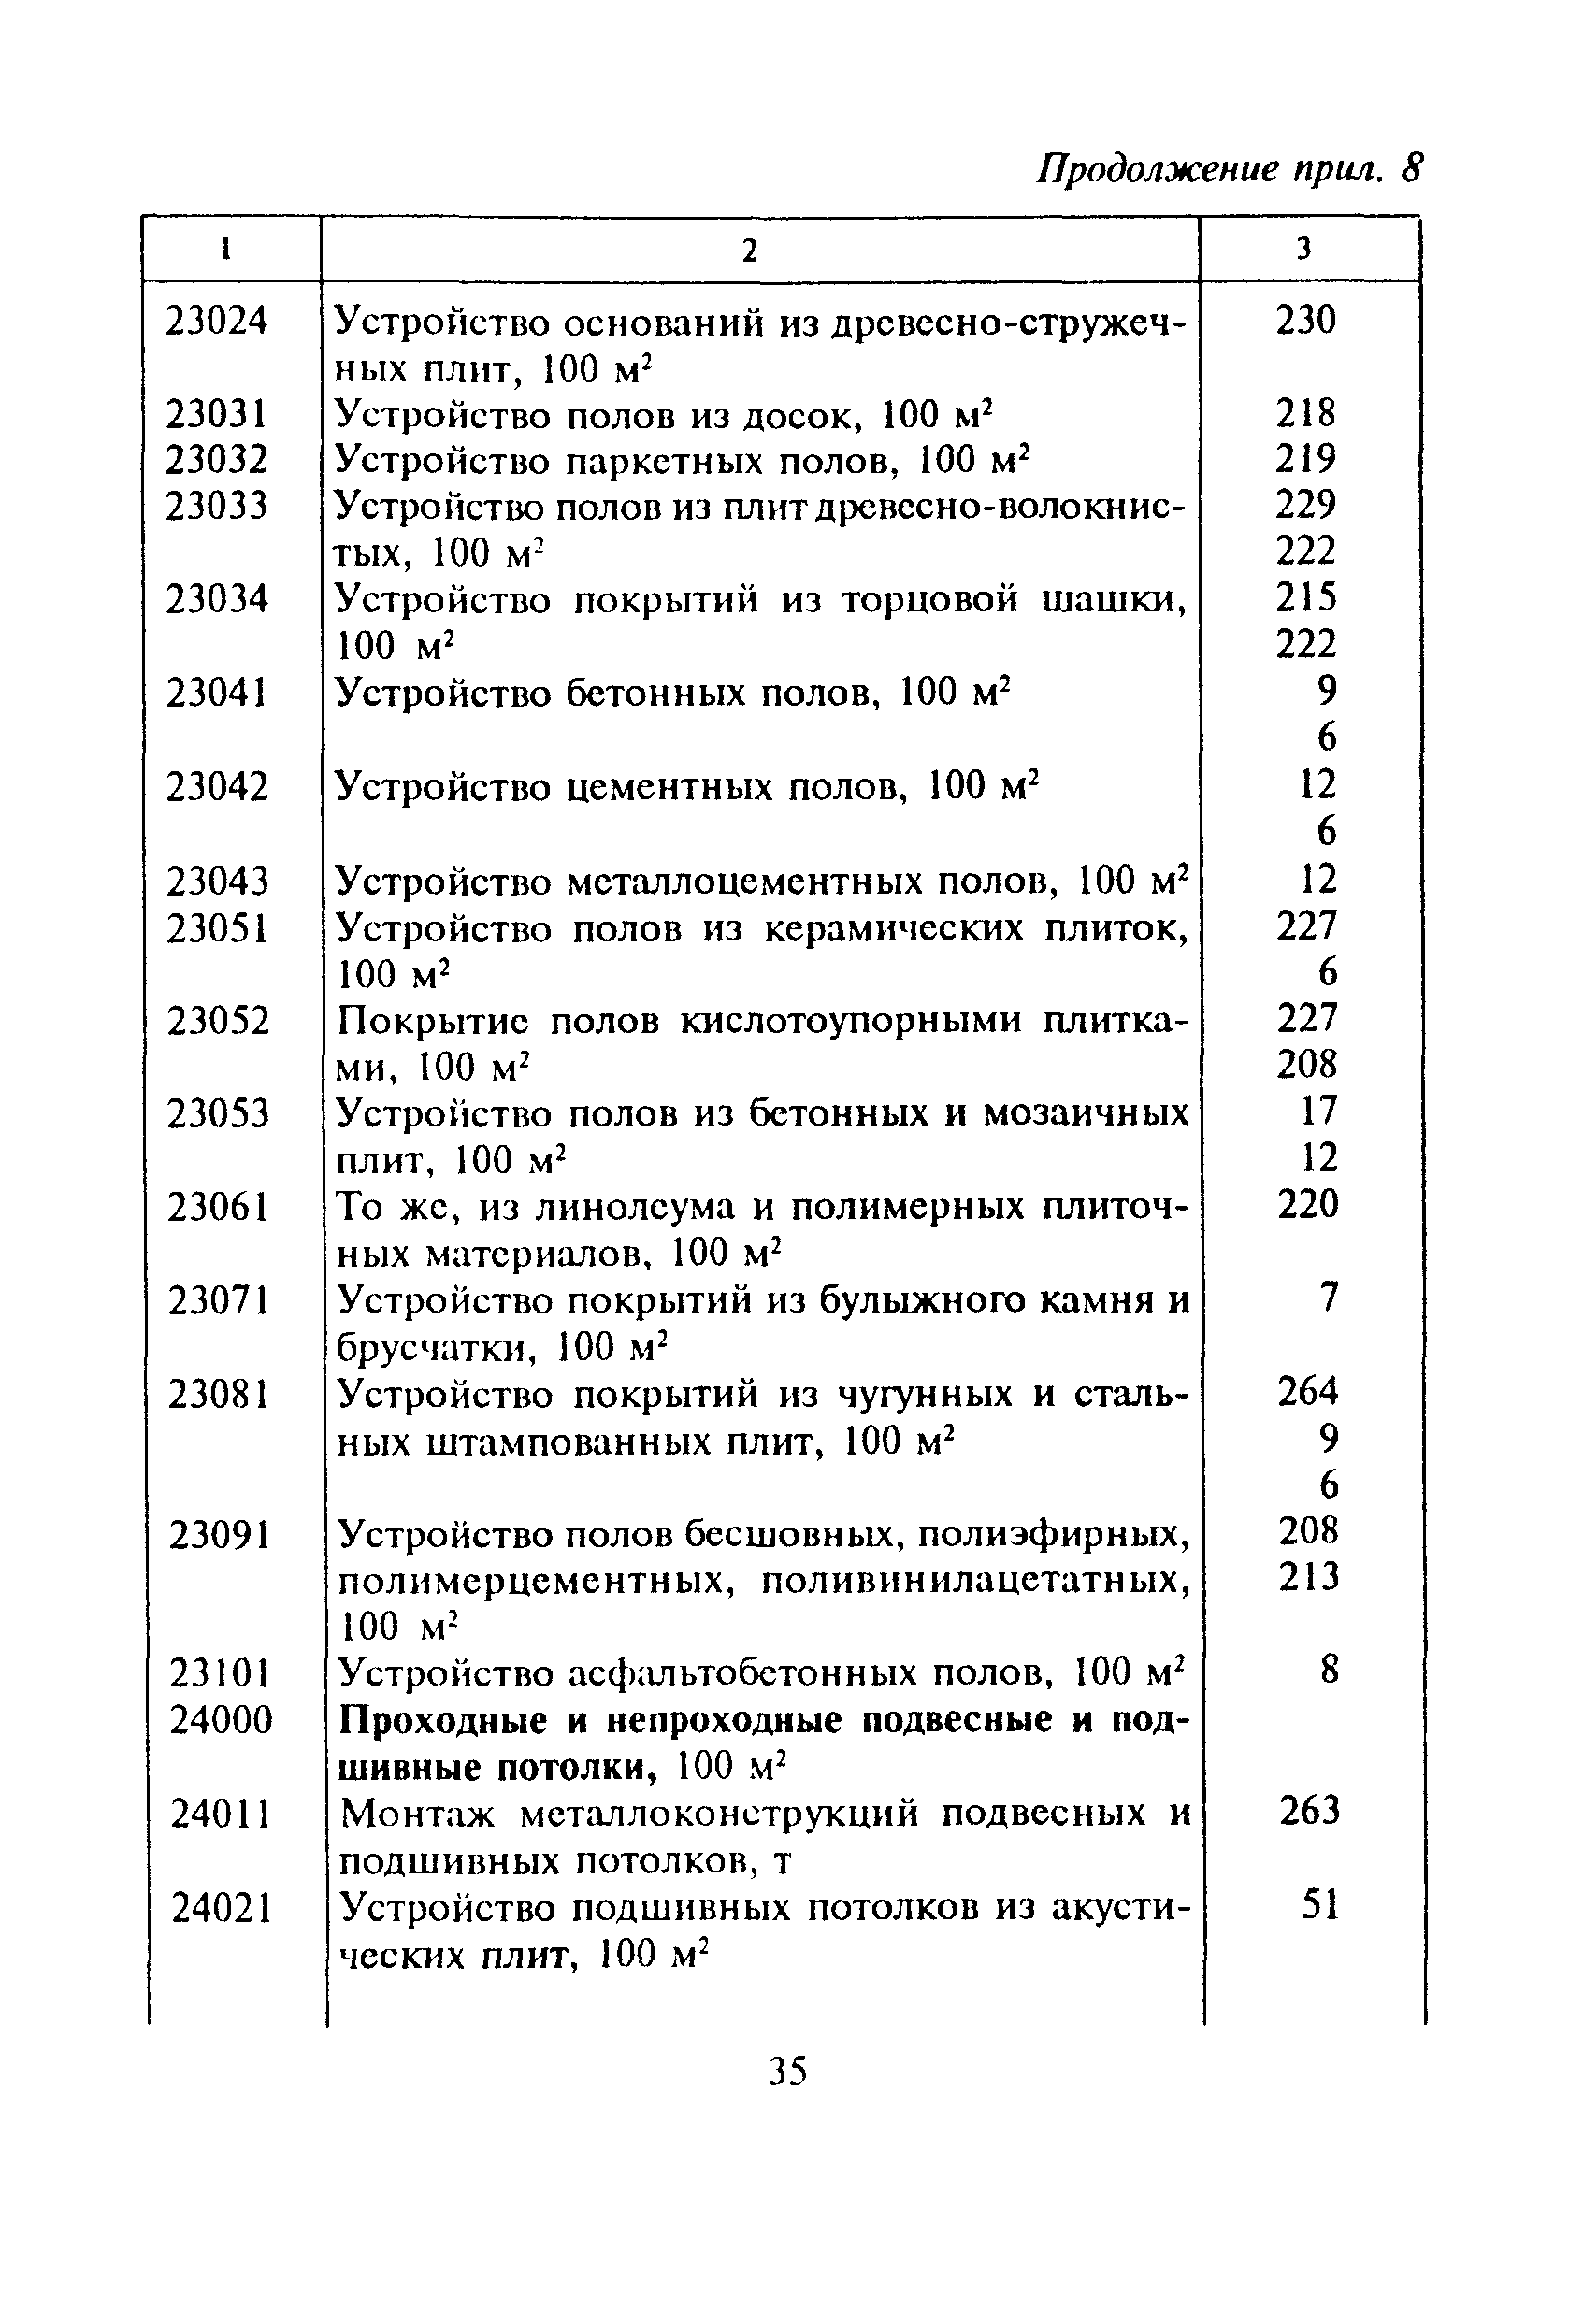 МДС 81-16.2000